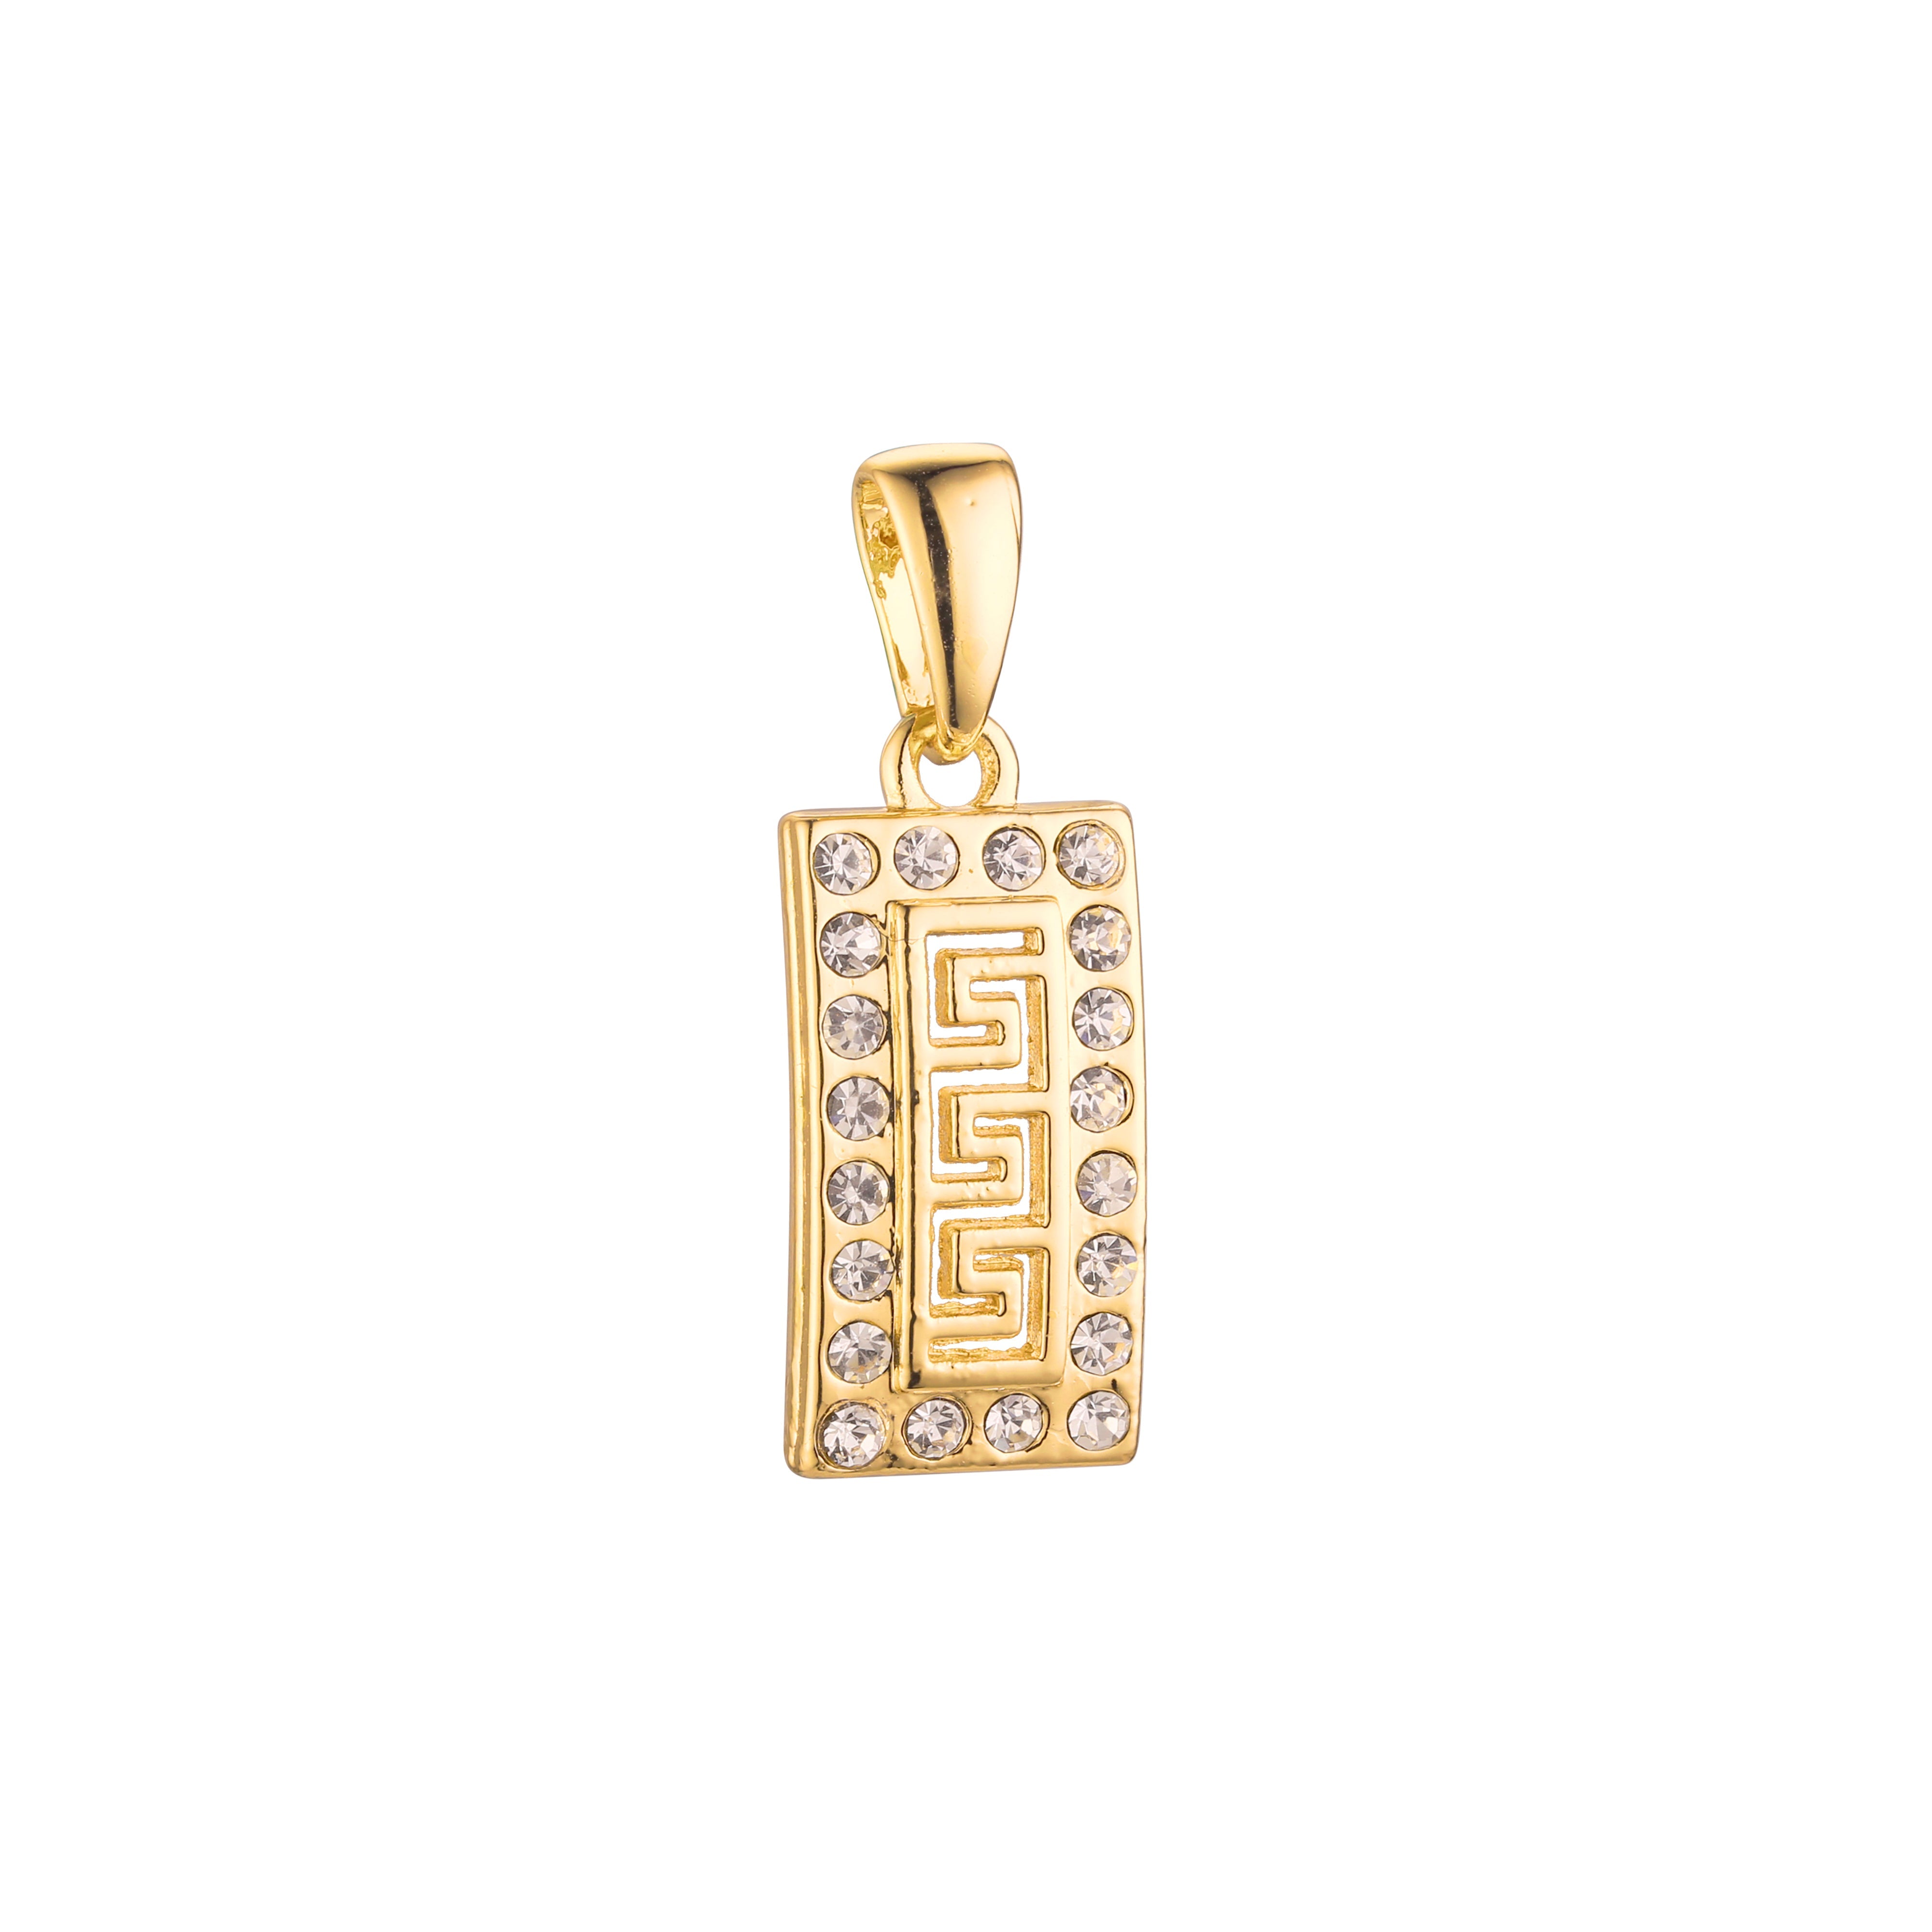 Rectangular Greek key meander 14K Gold, Rose Gold, 18K Gold Pendant